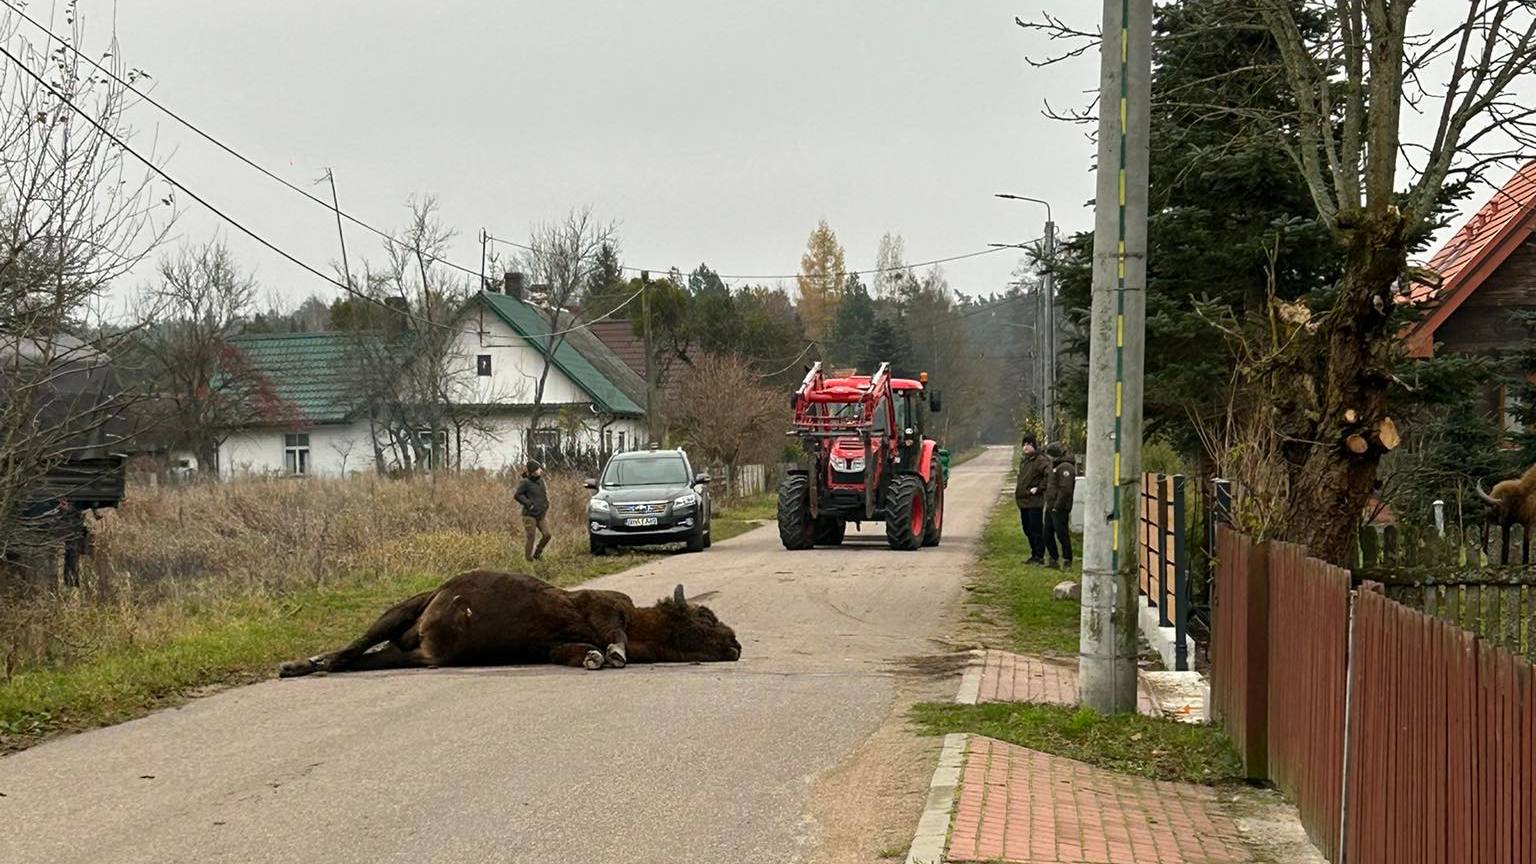 Żubr zabity na drodze w miejscowości Stare Masiewo na Podlasiu tuż przy granicy z Białowieskim Parkiem Narodowym